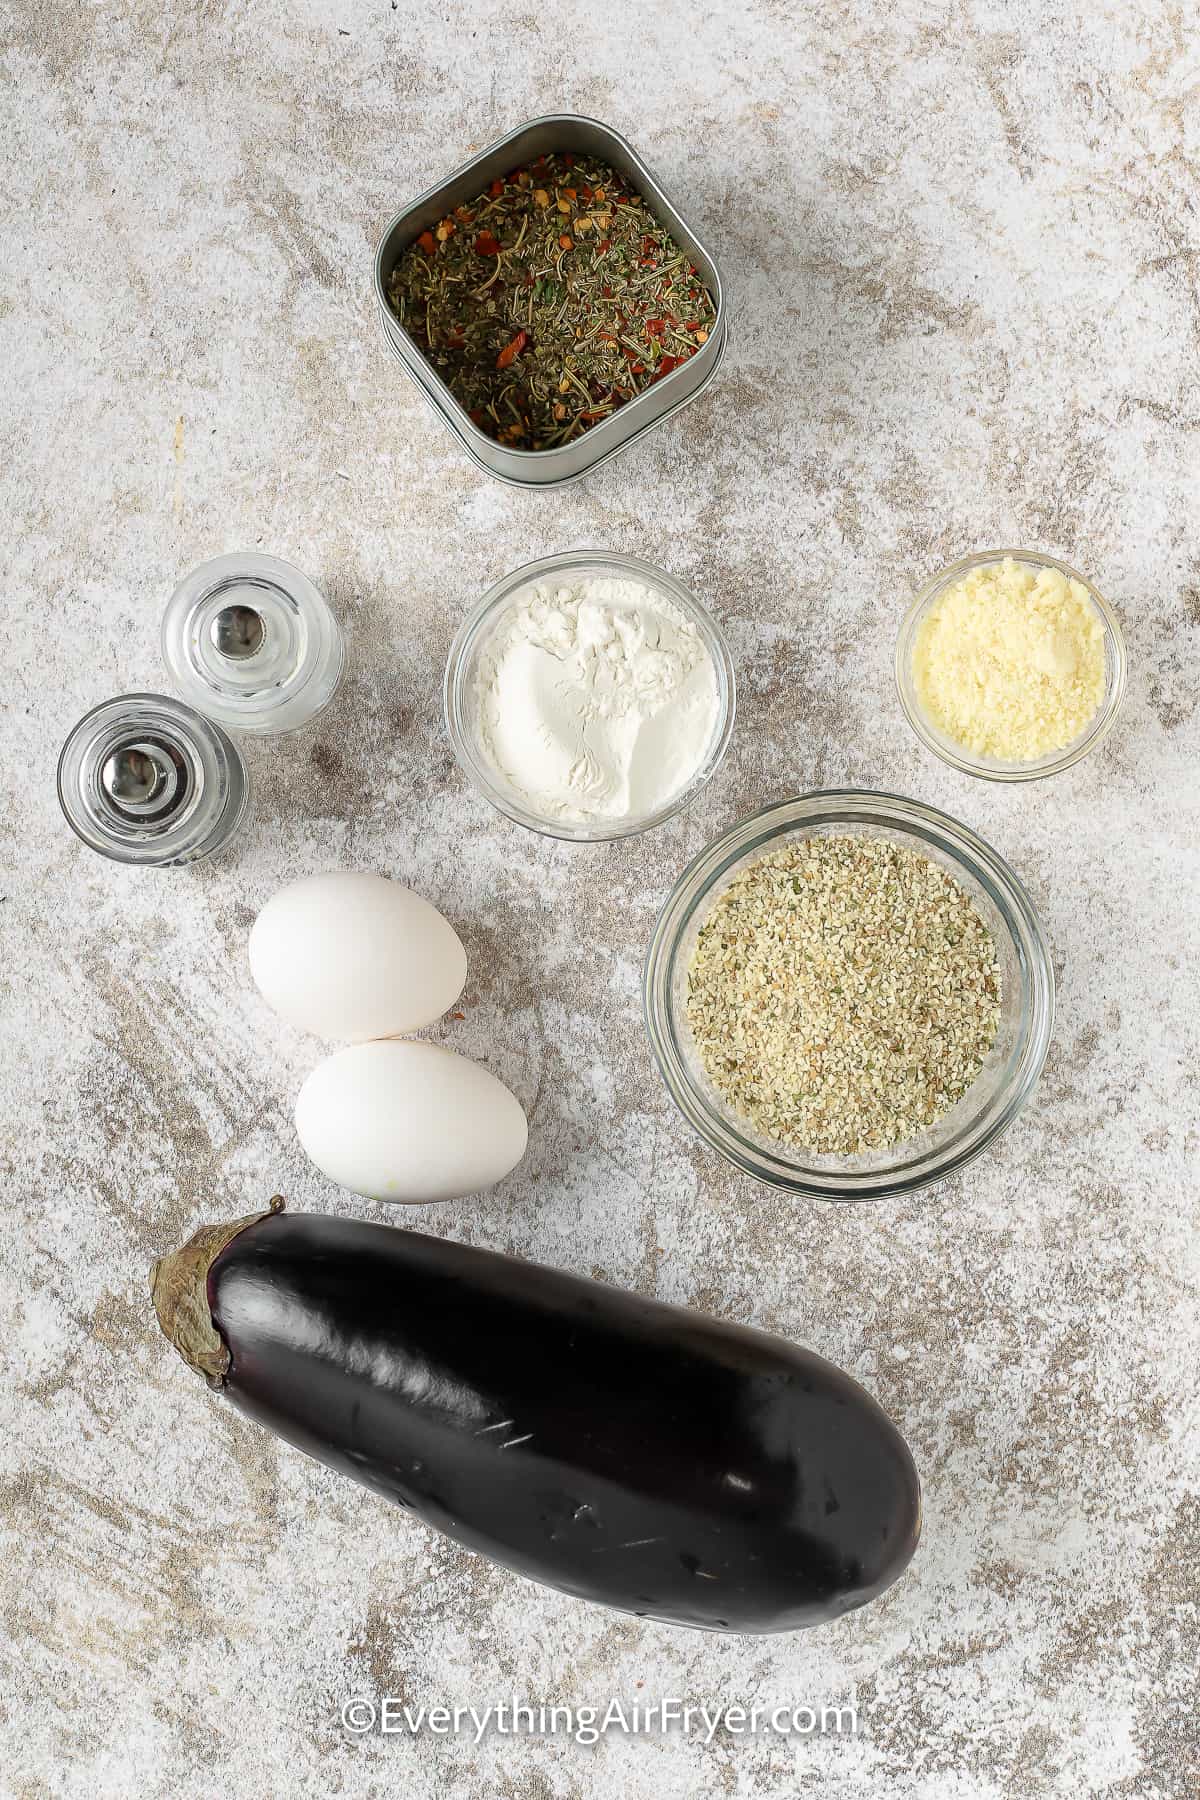 Ingredients to make Air Fryer Eggplant